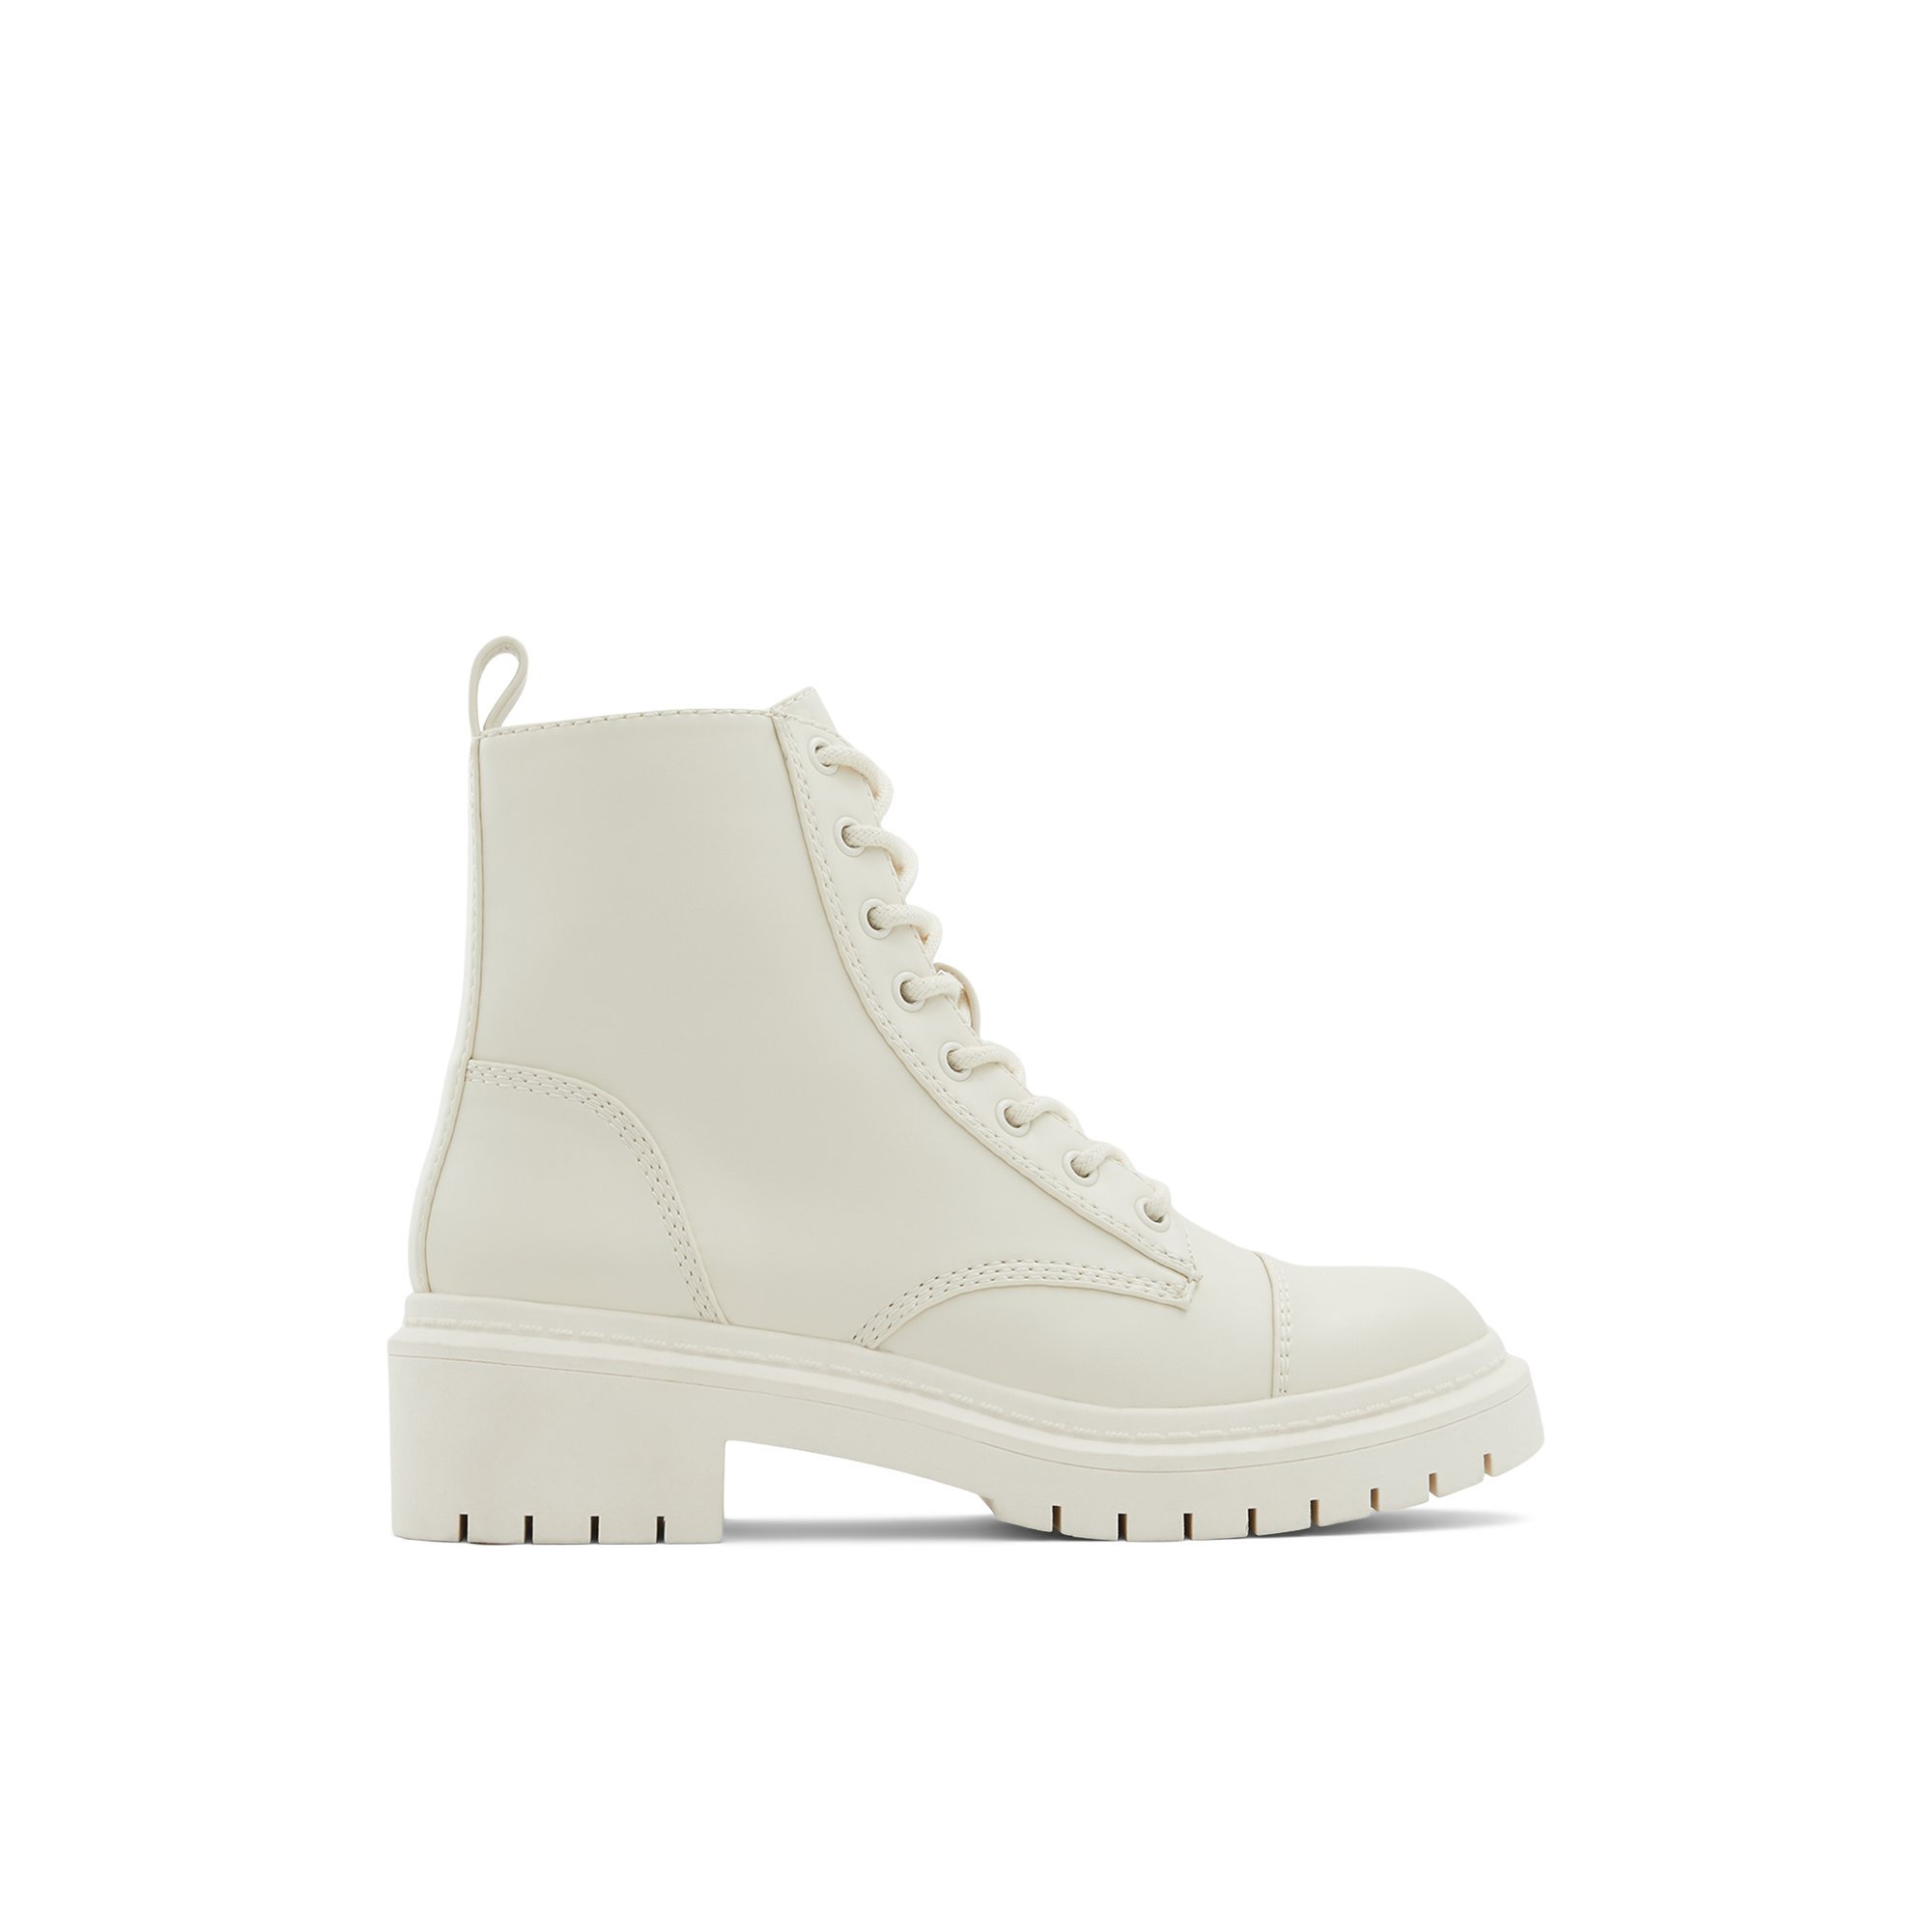 ALDO Goer - Women's Boots Winter - White